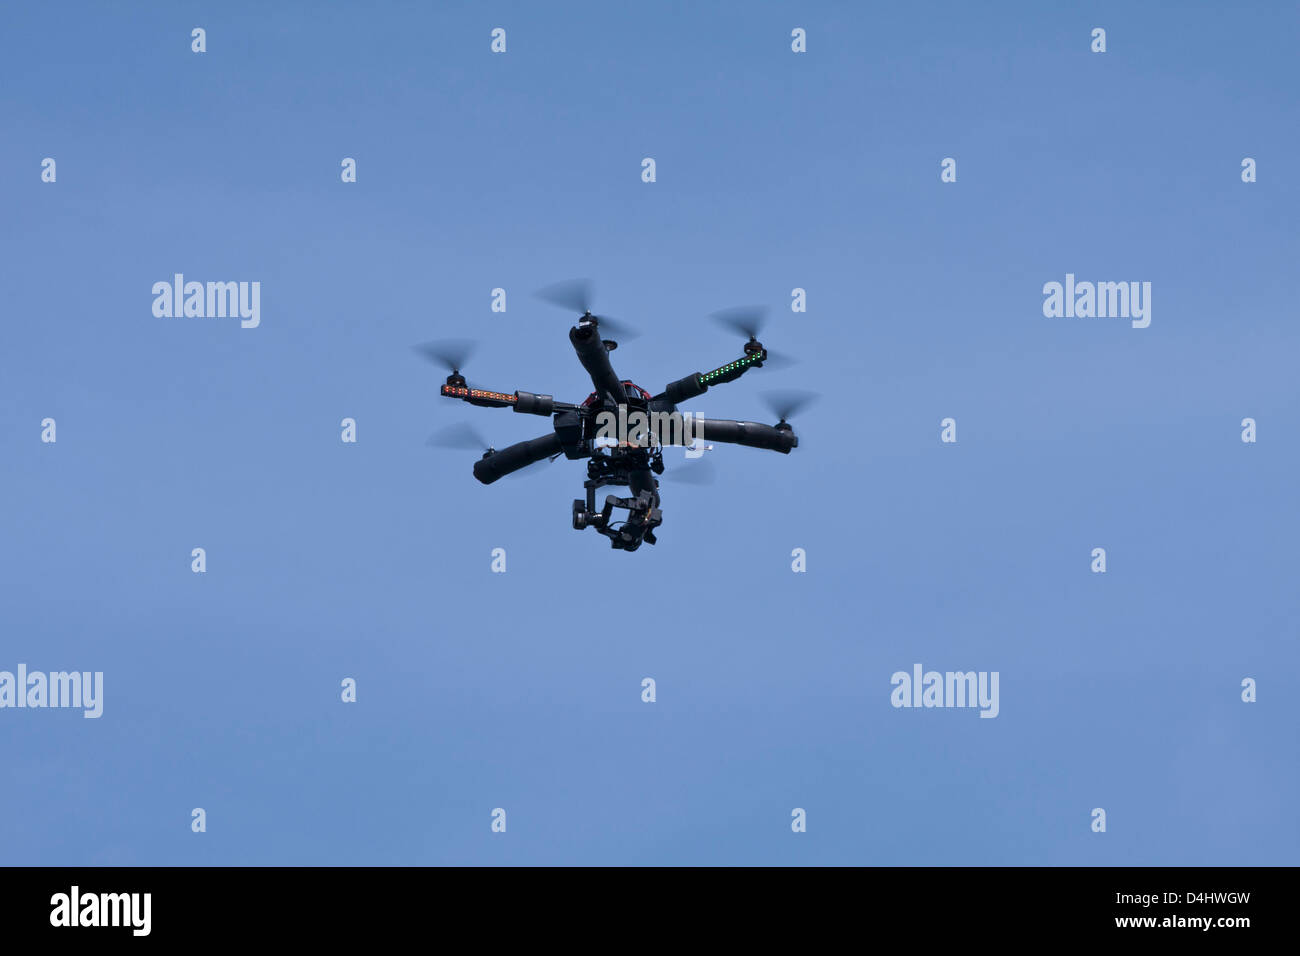 Helicóptero de radio control remoto con una pequeña cámara de video vuela contra un cielo azul. Foto de stock